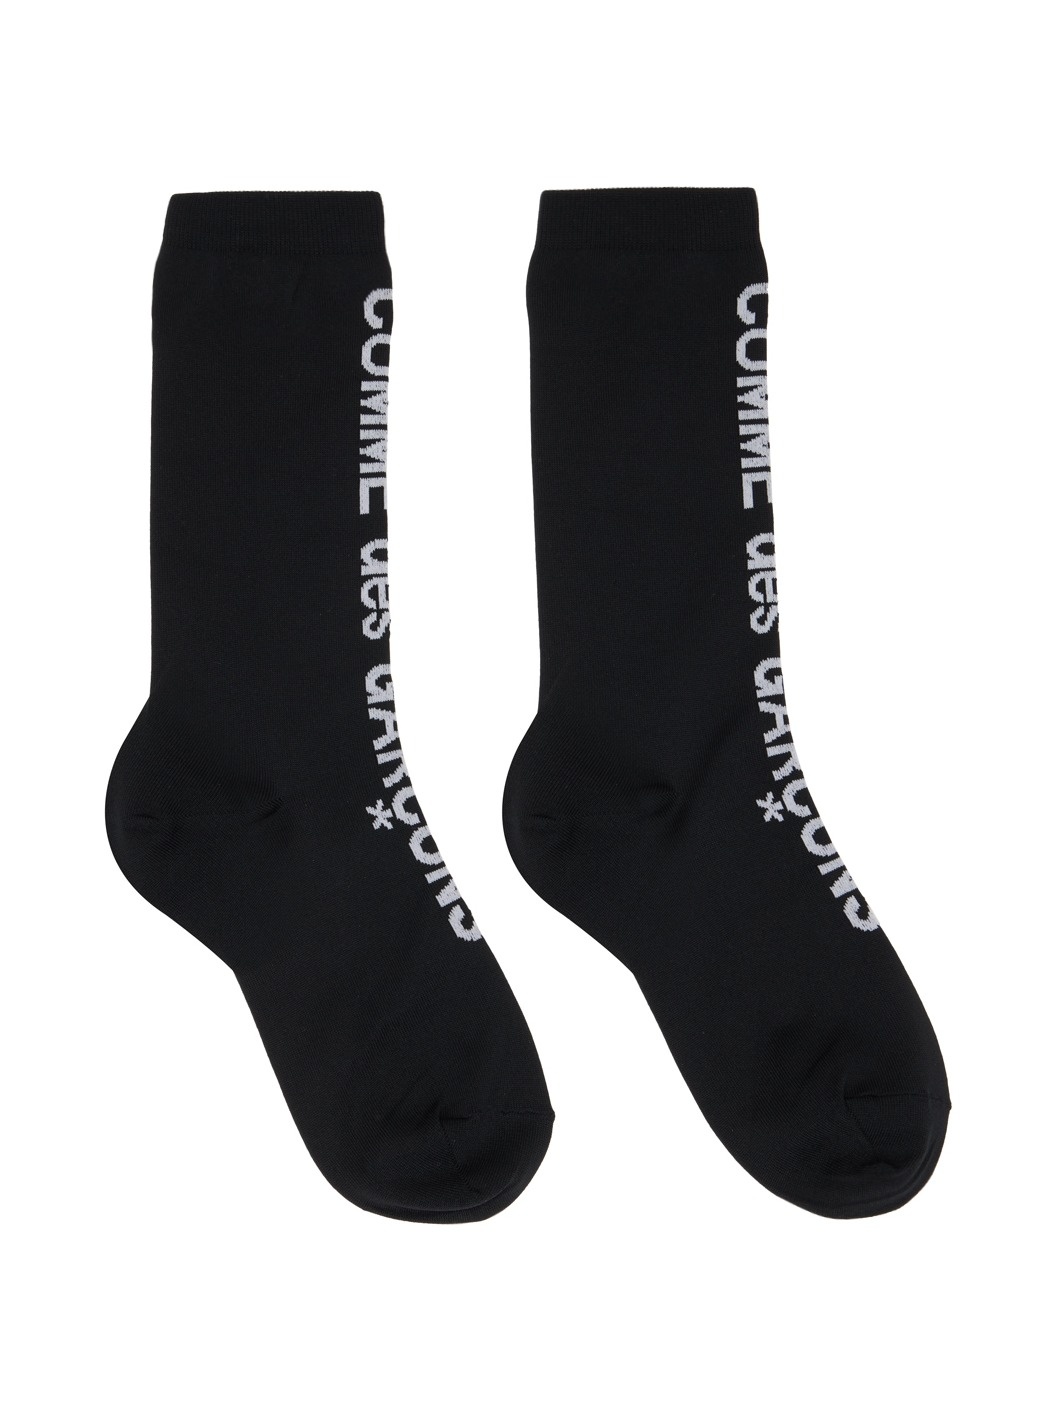 Black Ribbed Socks - 1